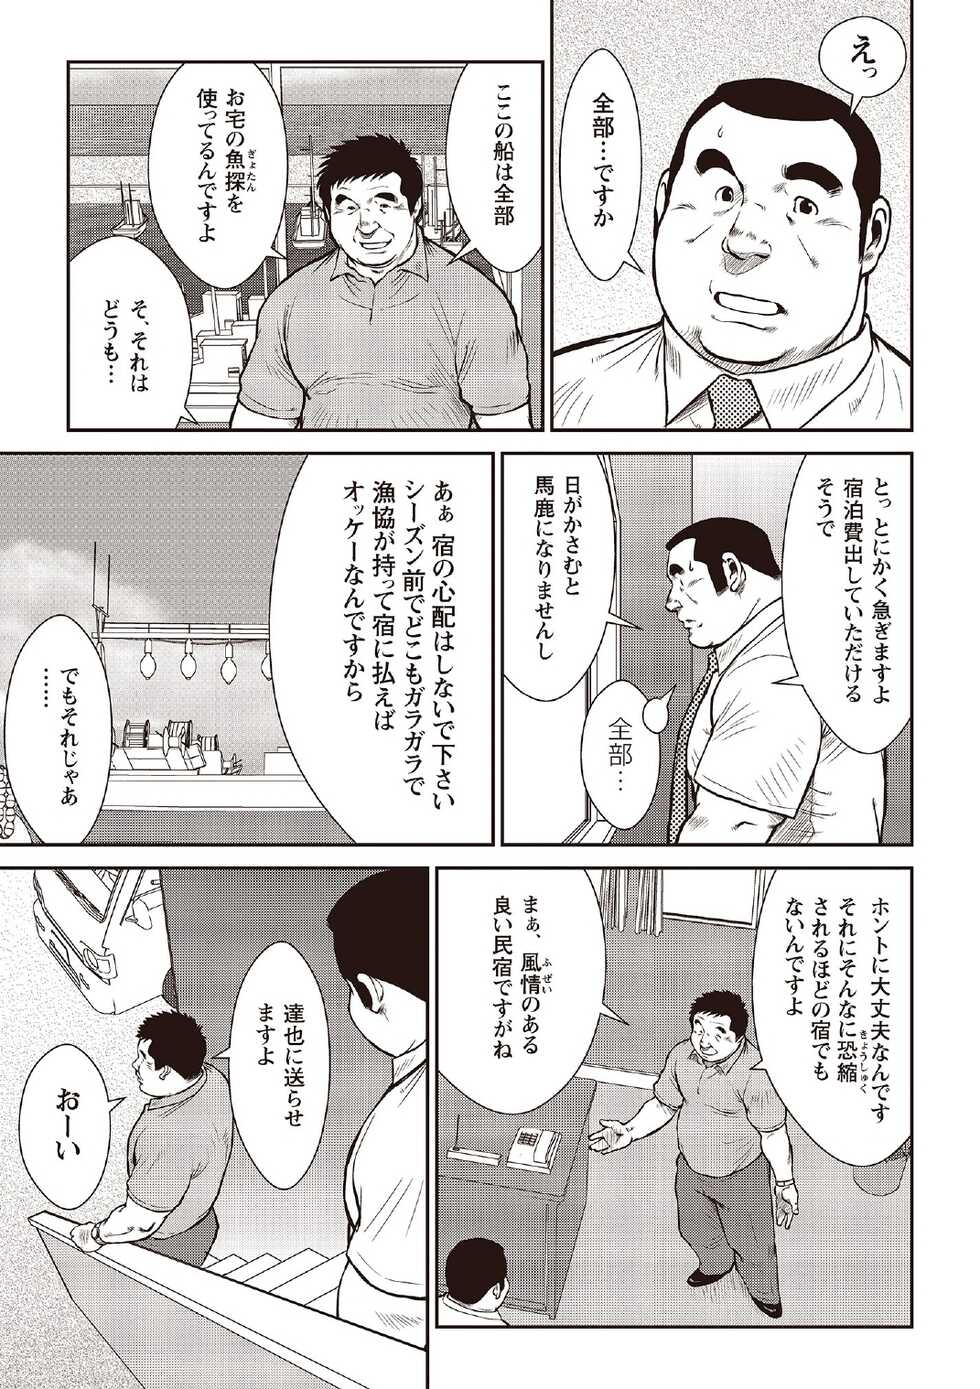 [Ebisubashi Seizou] Ebisubashi Seizou Tanpen Manga Shuu 2 Fuuun! Danshi Ryou [Bunsatsuban] PART 2 Bousou Hantou Taifuu Zensen Ch. 1 + Ch. 2 [Digital] - Page 7